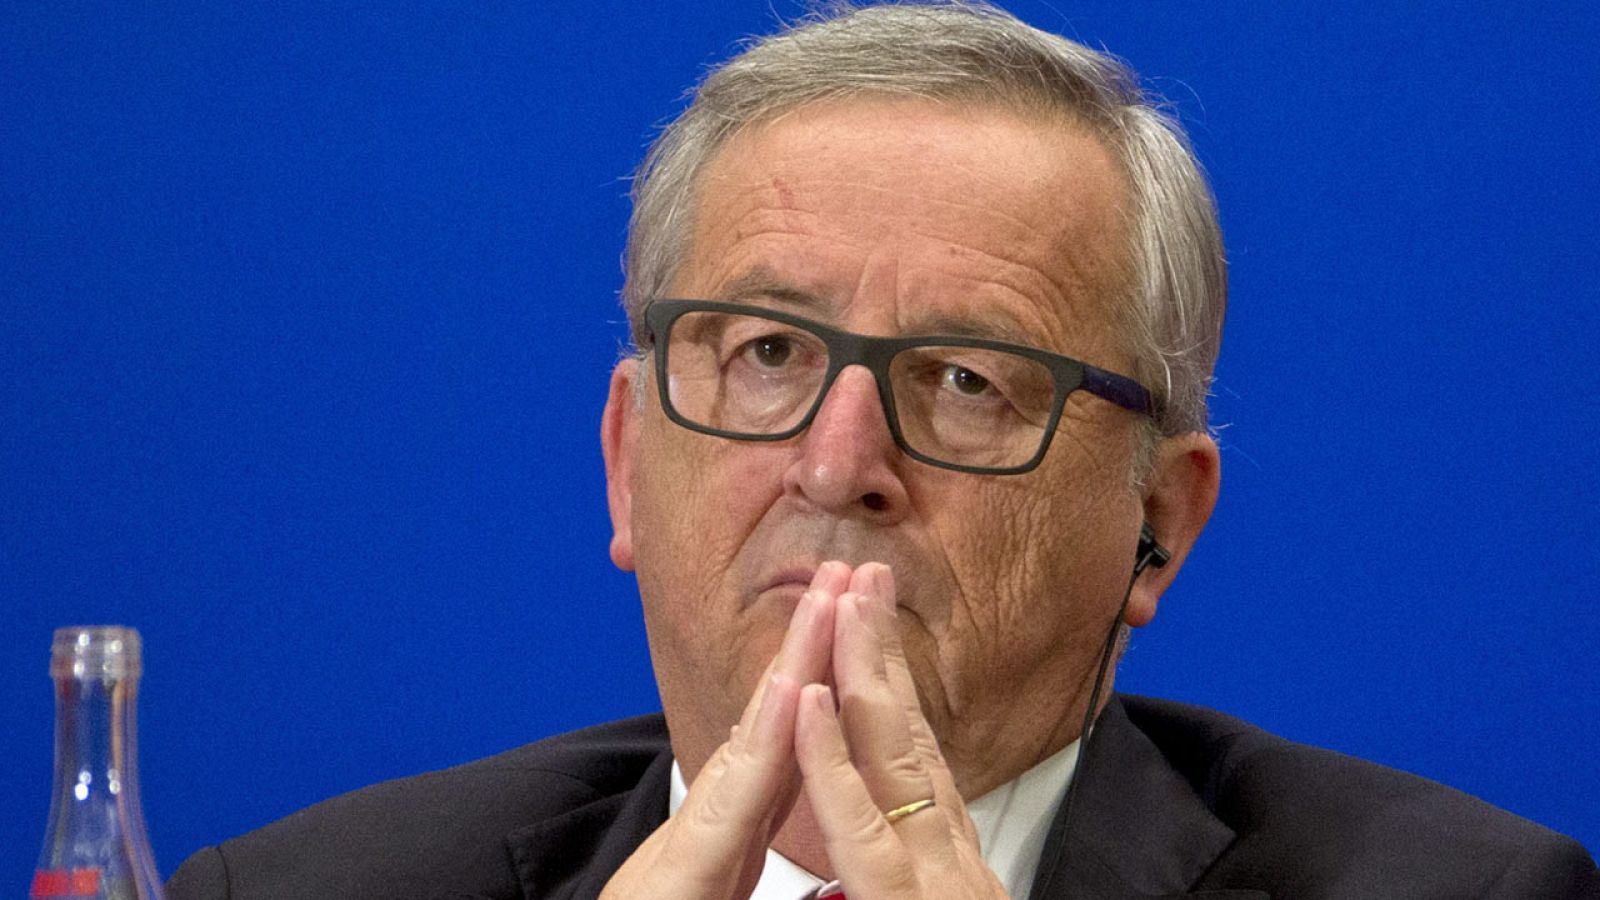 El presidente de la Comisión Europea, Jean-Claude Juncker, durante la cumbre China-Unión Europea